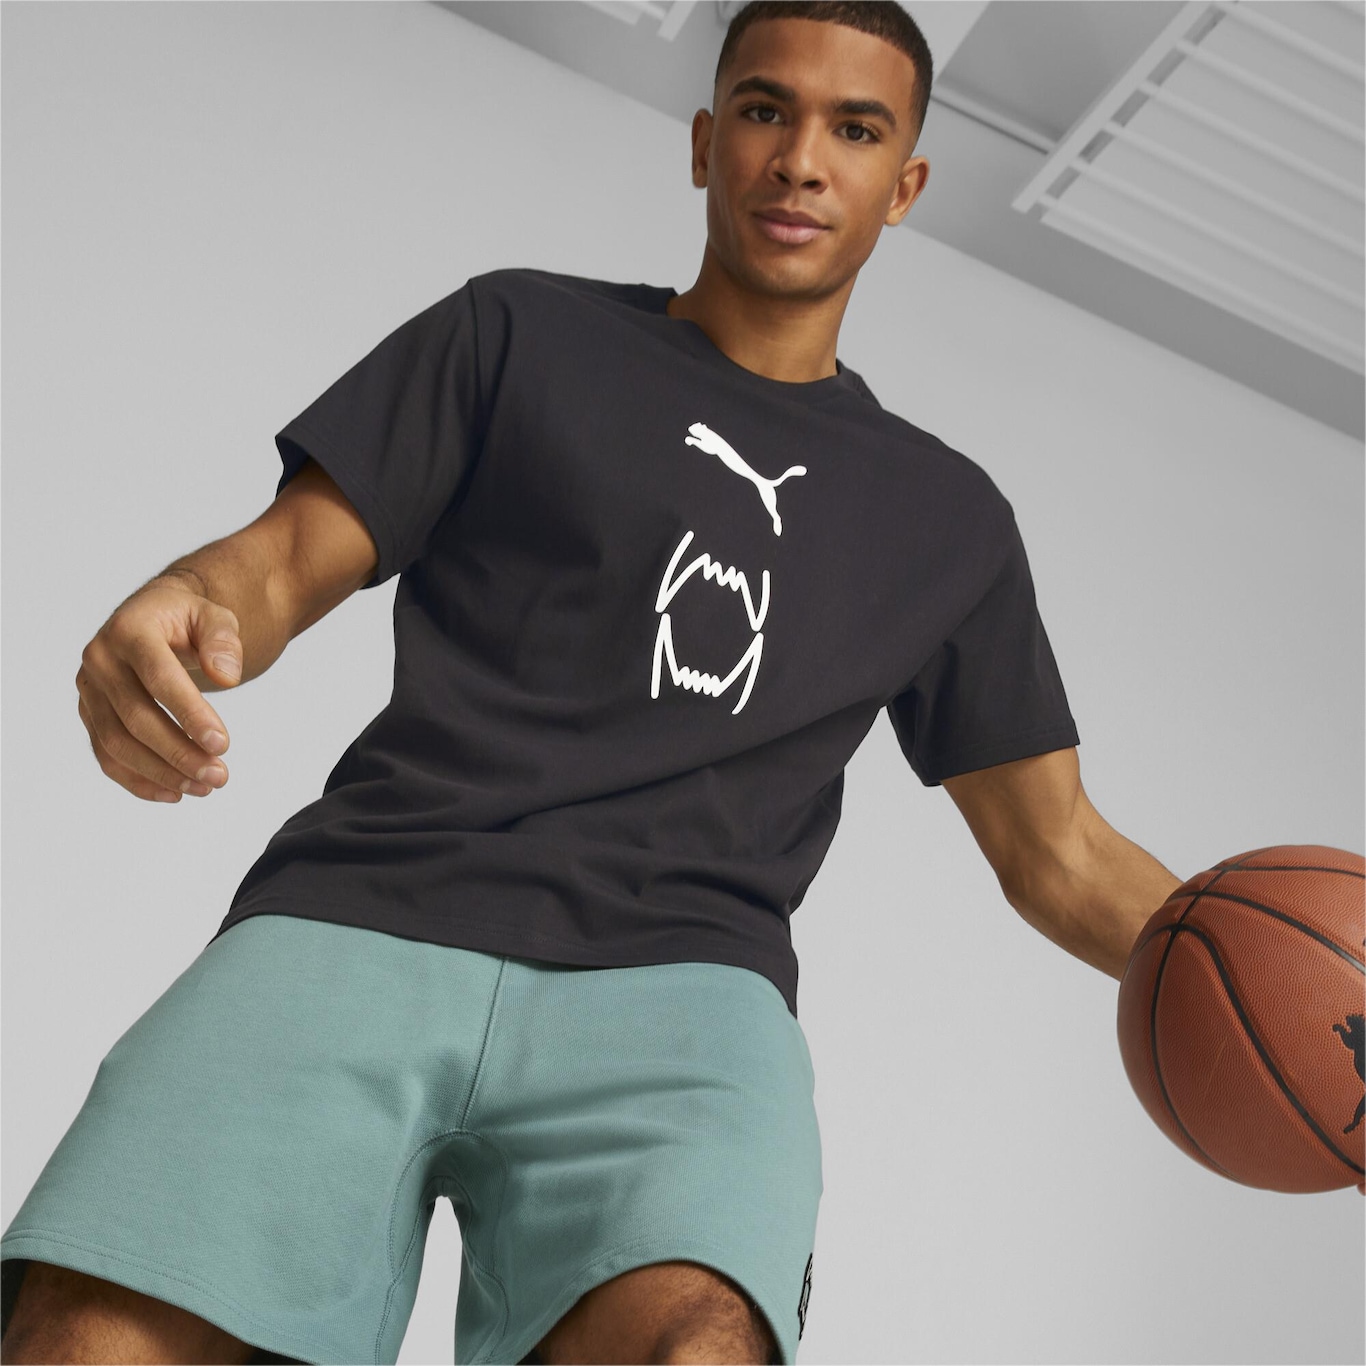 Shorts Give N' Go Basketball Masculino, Verde, PUMA